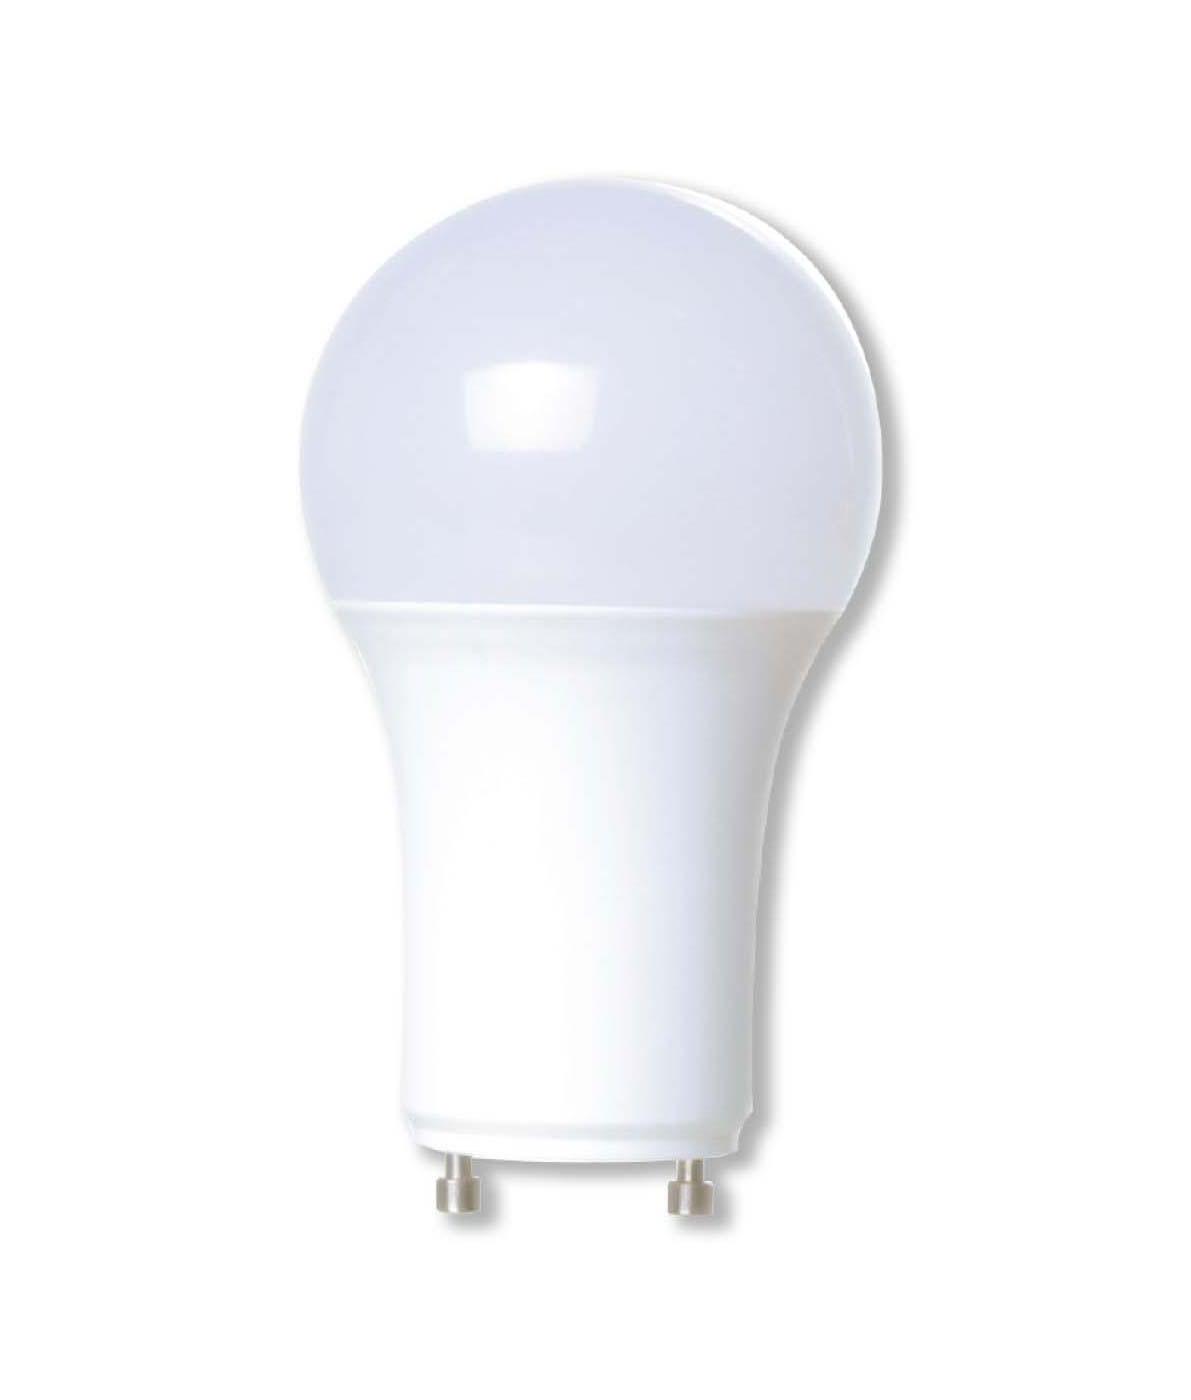 H-E-B GU24 60-Watt LED Light Bulbs - Soft White; image 2 of 2